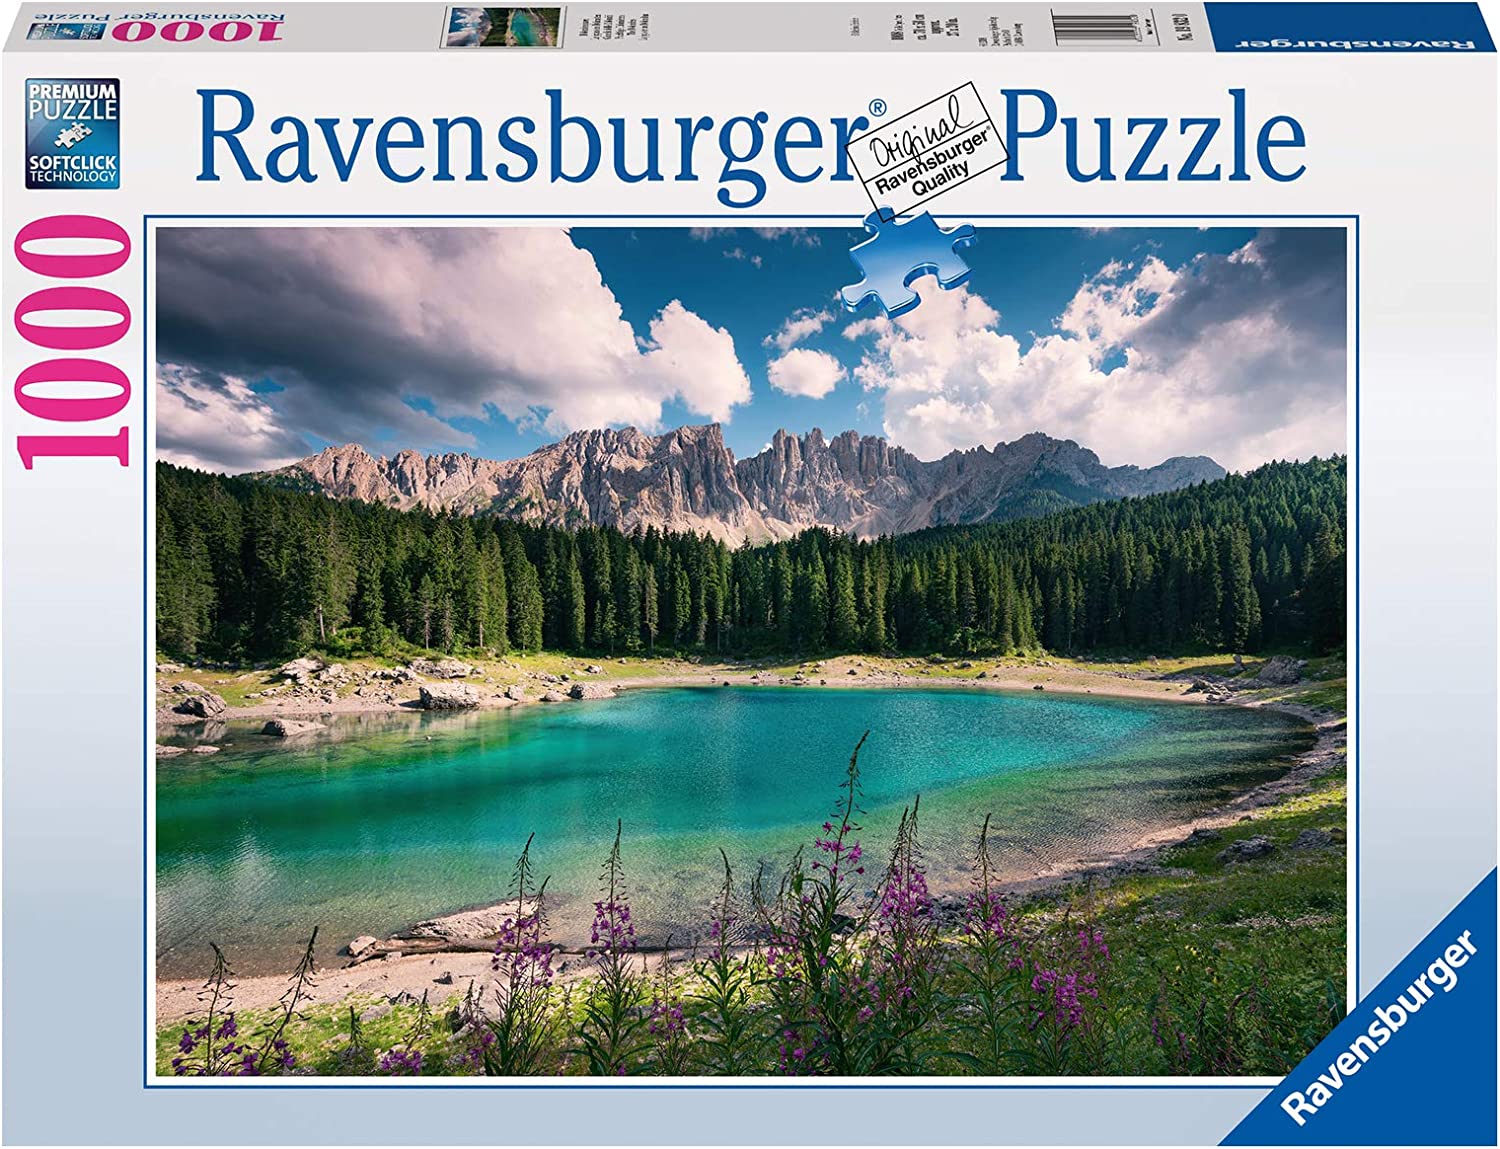 19832 Ravensburger Puzzle Gioiello Delle Dolomiti